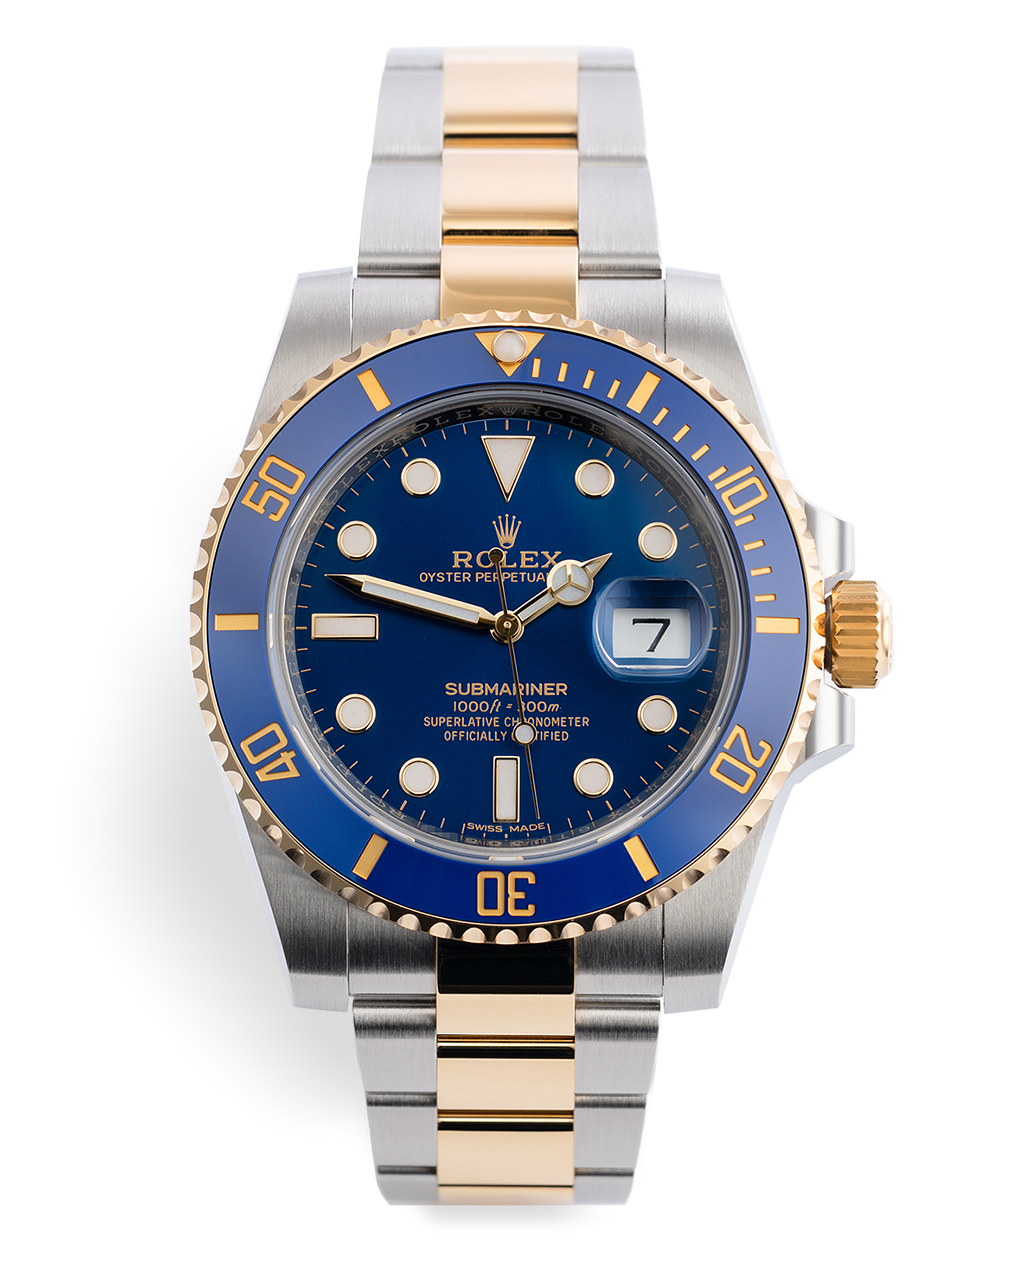 Rolex Submariner Date Watches | ref 116613LB | 5 Year Warranty 'Gold ...